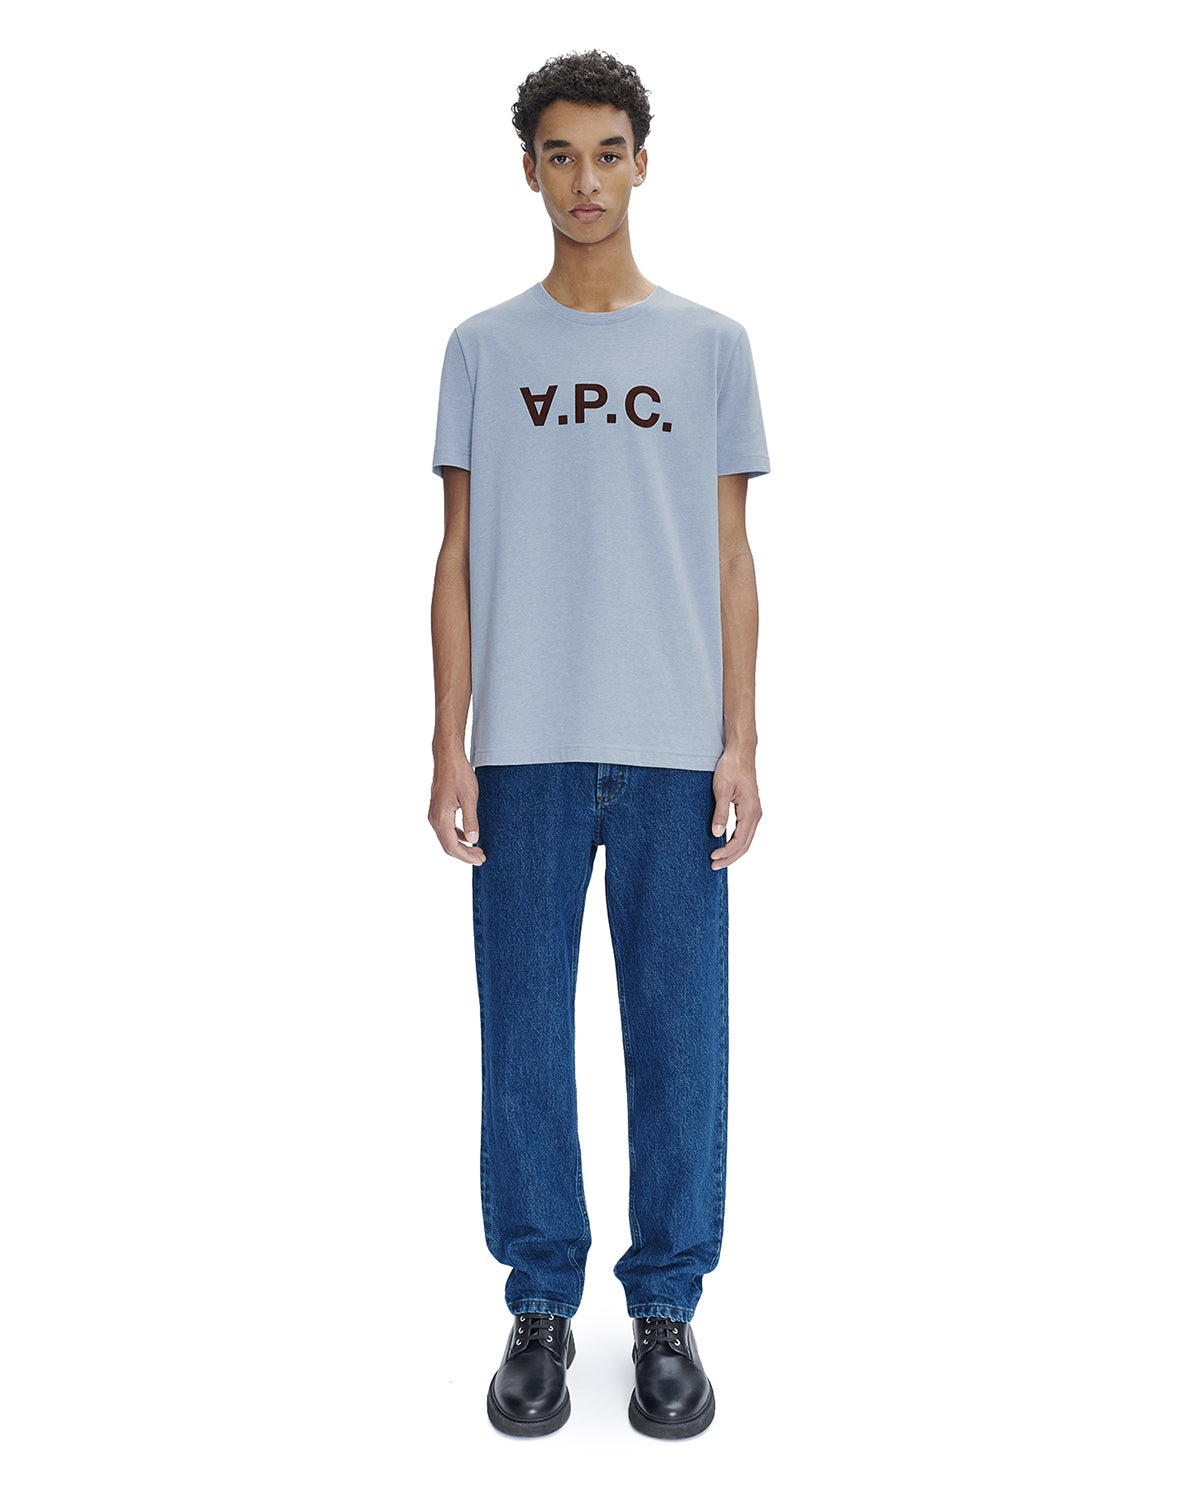 A.P.C. T-shirt VPC Washed Indigo MEN T-SHIRTS